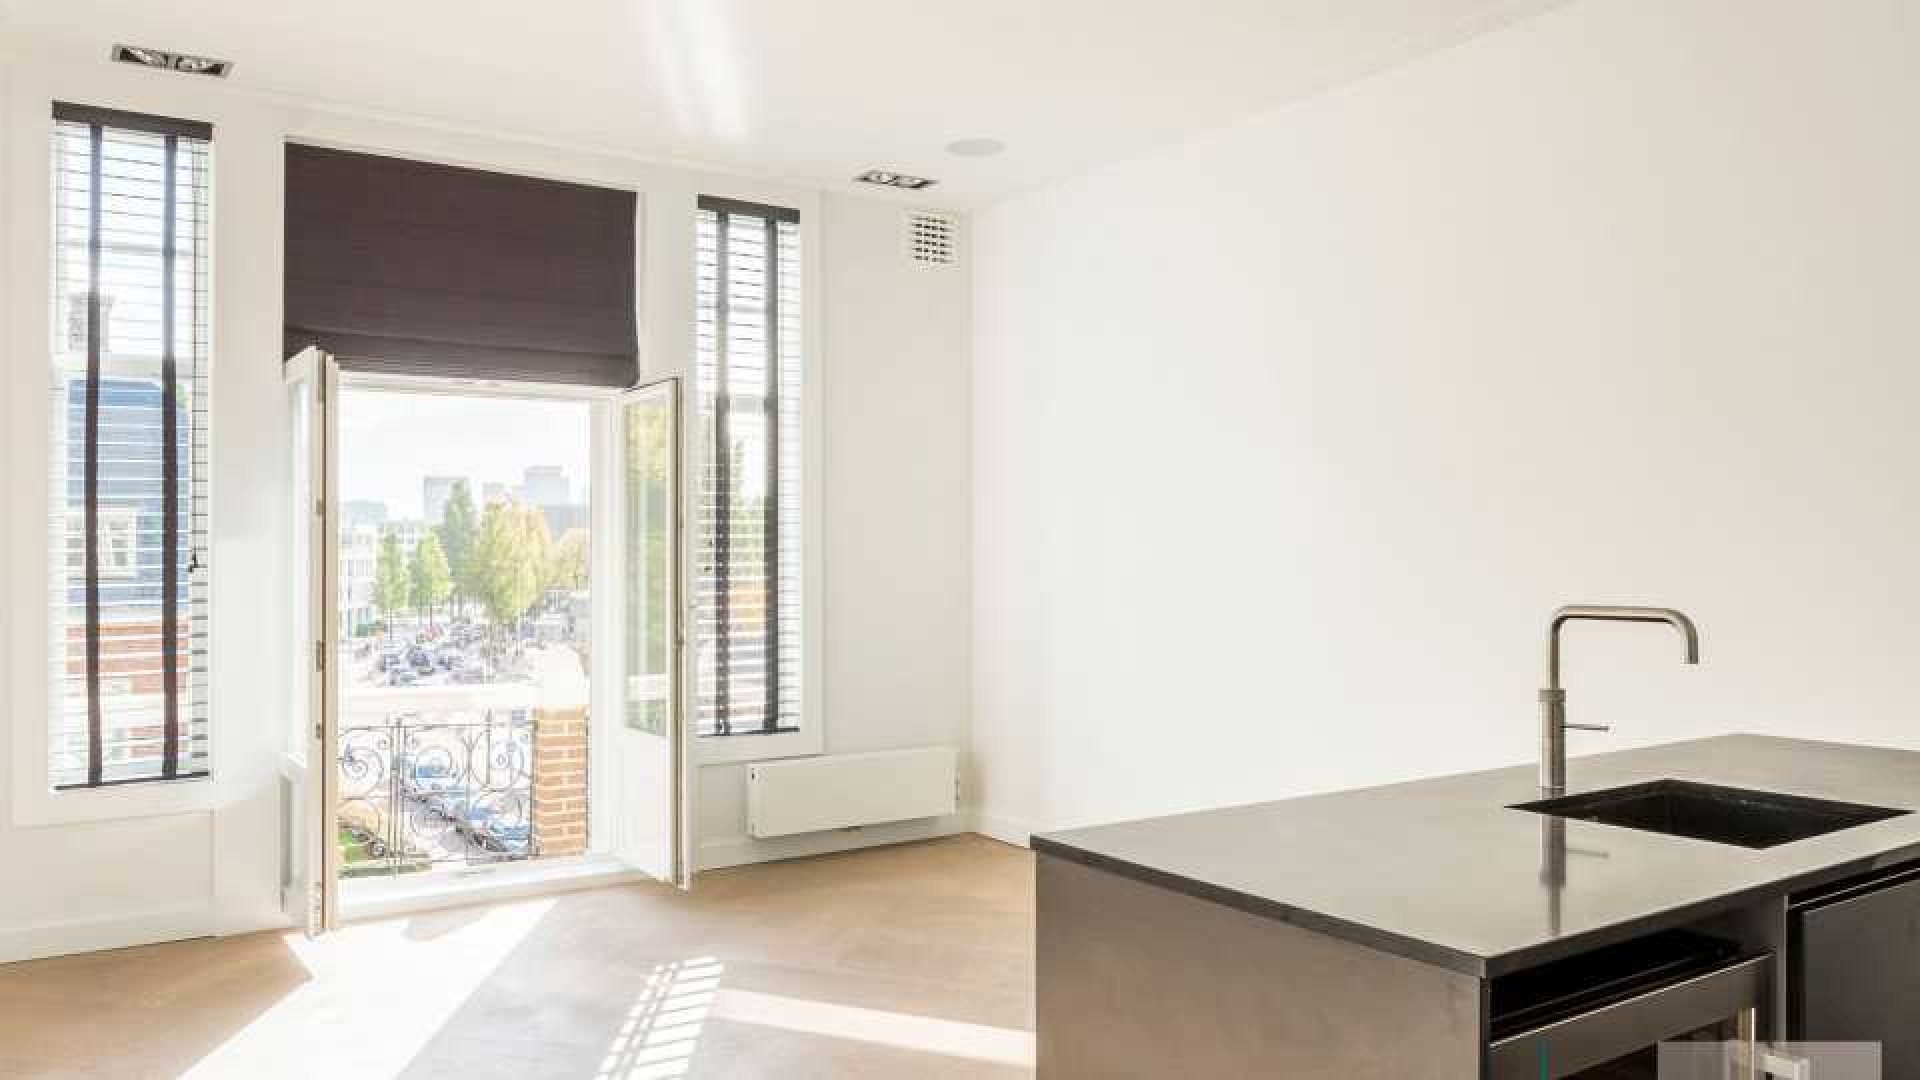 Leco van Zadelhoff verkoopt appartement in Amsterdam Zuid boven de vraagprijs. Zie foto's 6